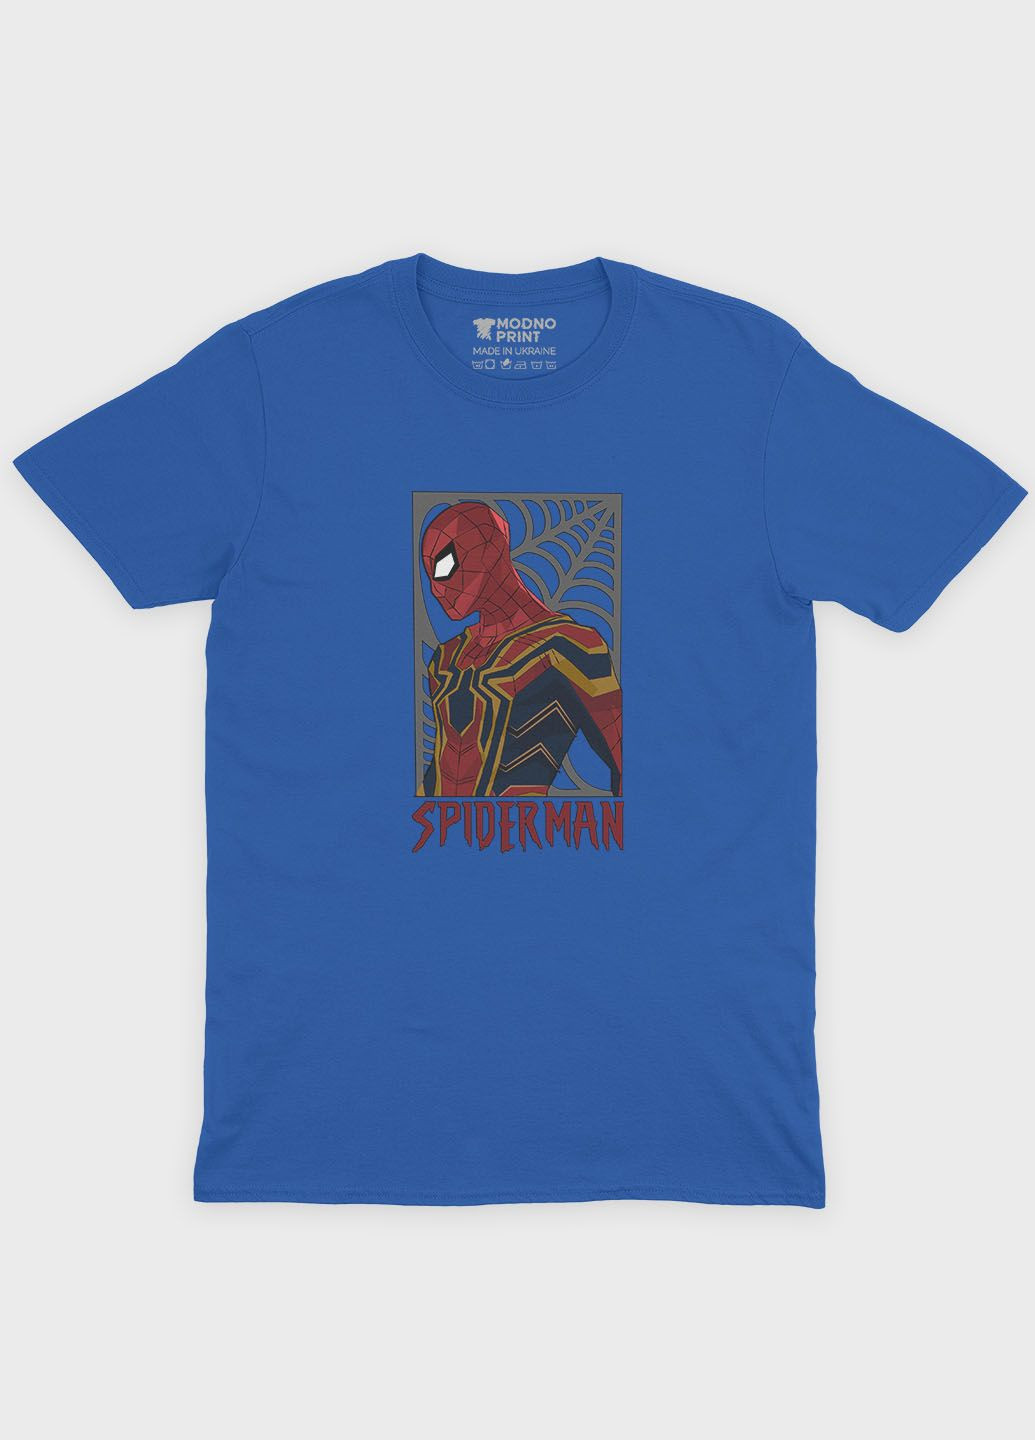 Синя демісезонна футболка для хлопчика з принтом супергероя - людина-павук (ts001-1-brr-006-014-048-b) Modno